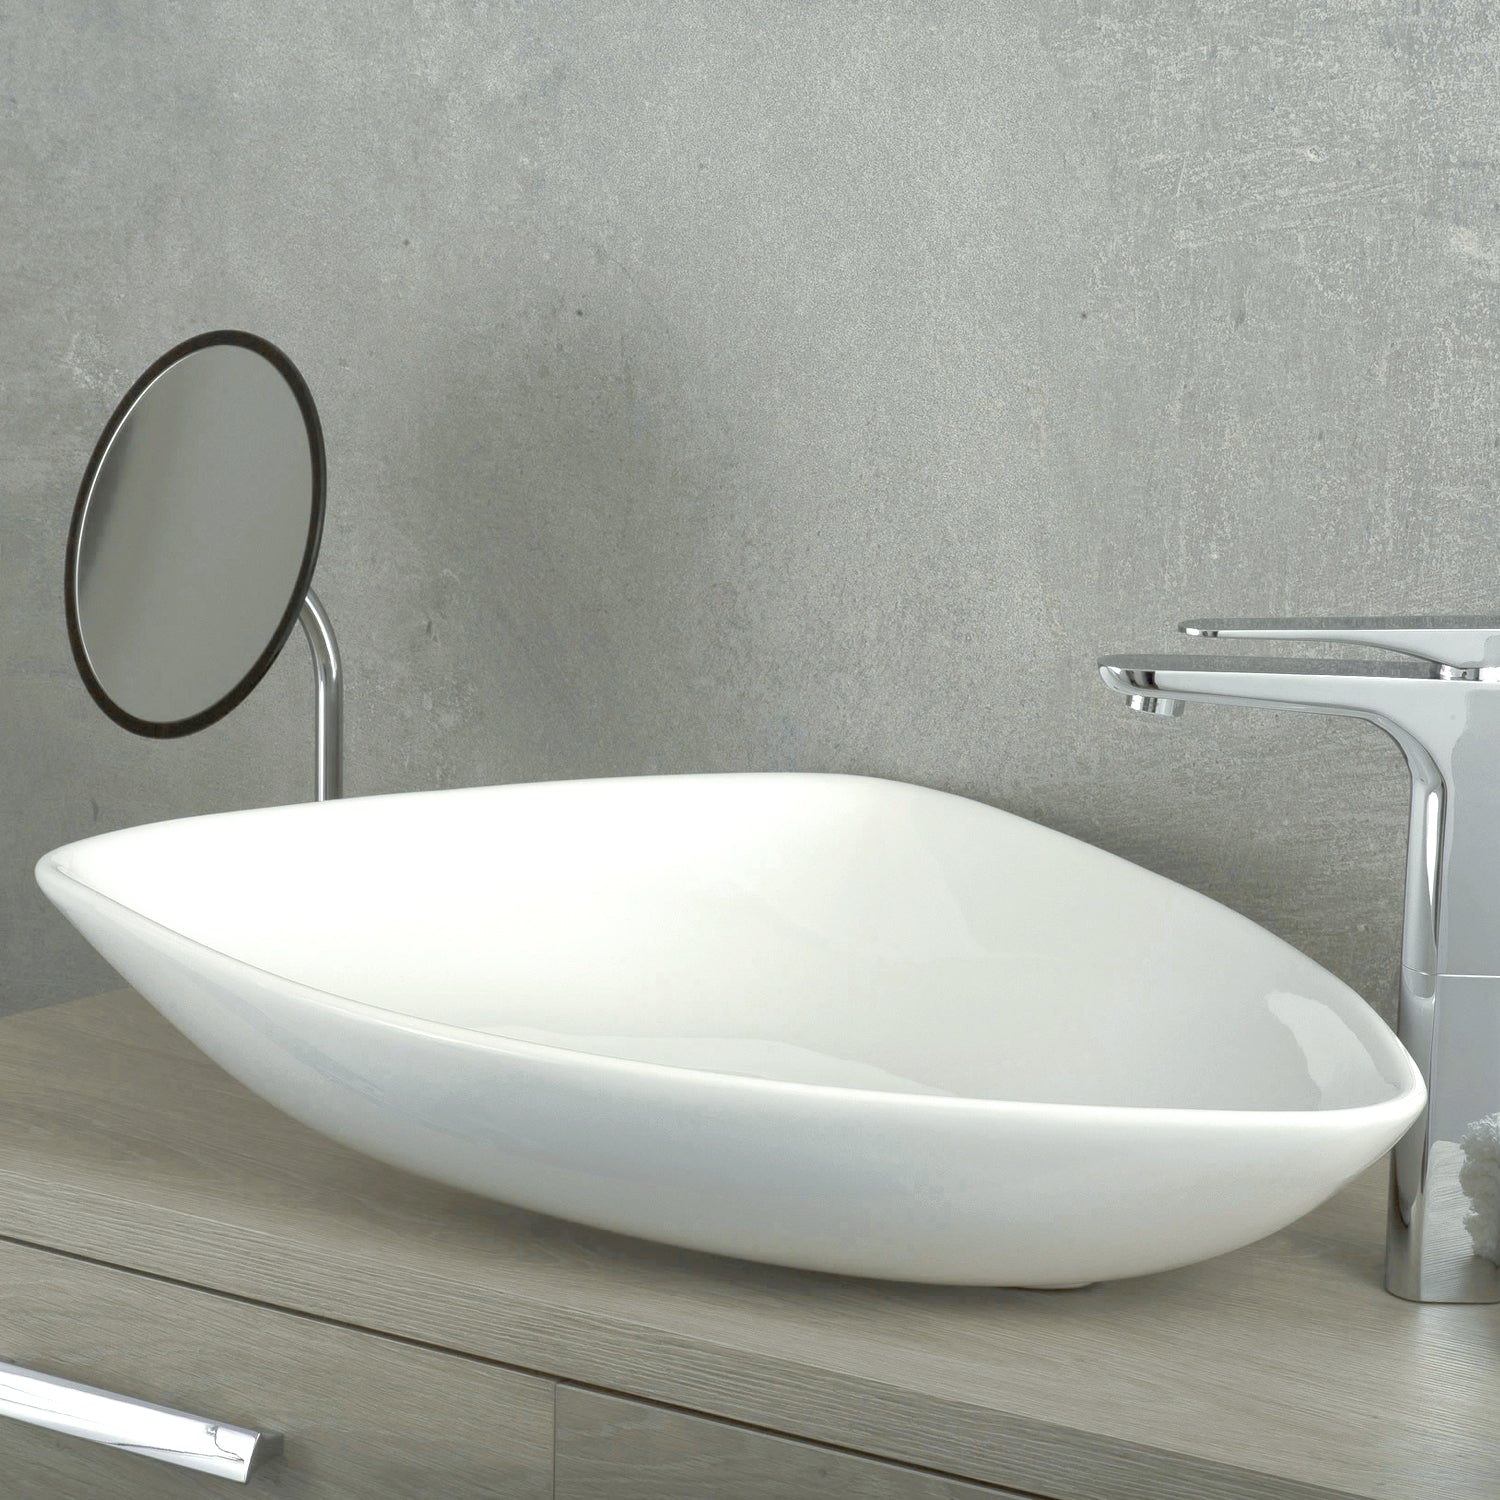 DAX Triángulo de cerámica Lavabo de recipiente individual para baño, acabado blanco, 26 x 18 x 5 pulgadas (BSN-223)